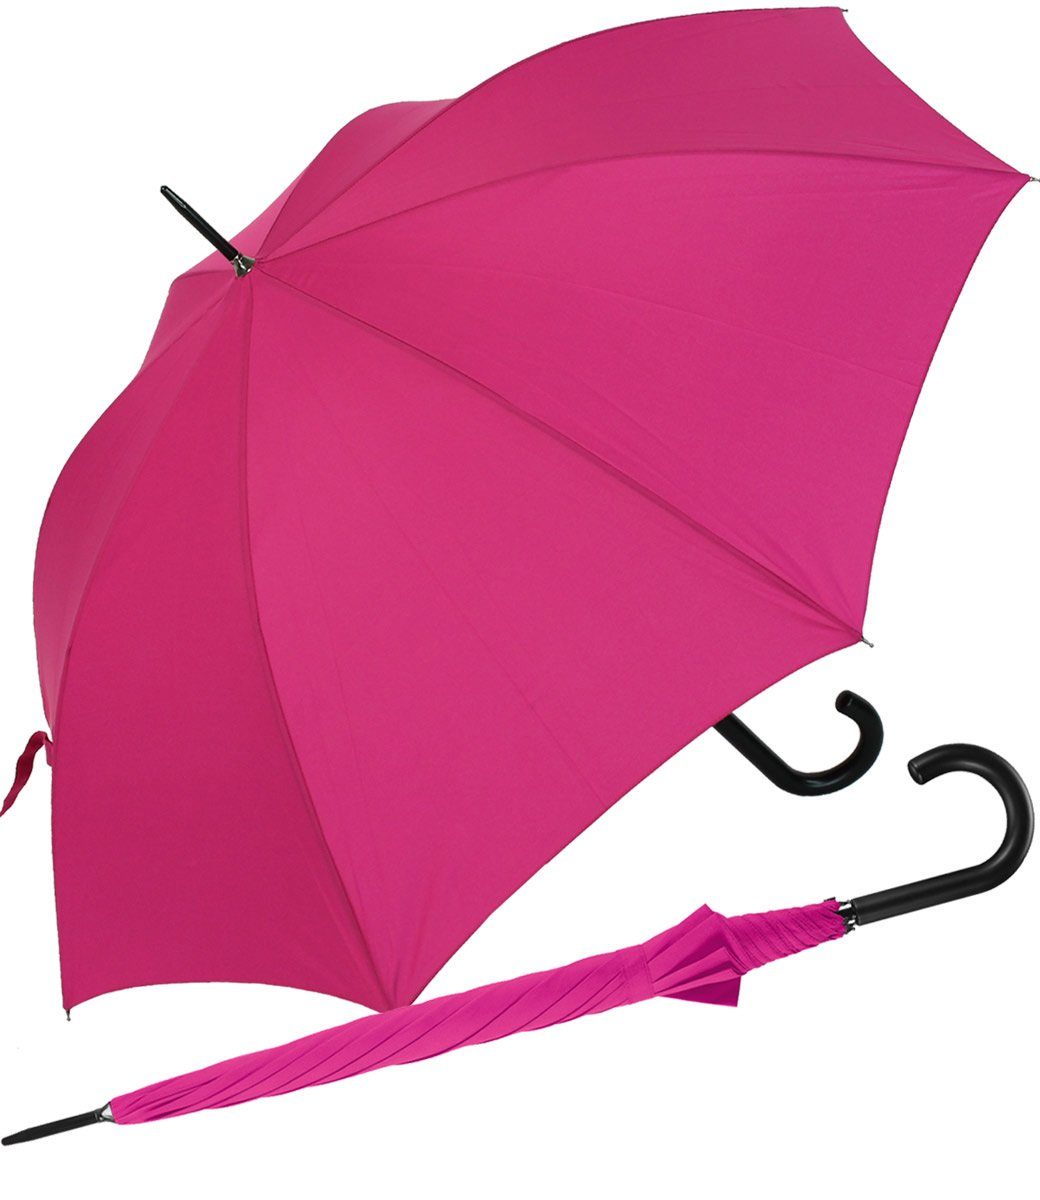 RS-Versand Langregenschirm großer stabiler Regenschirm mit Auf-Automatik, für Damen und Herren in vielen modischen Farben pink